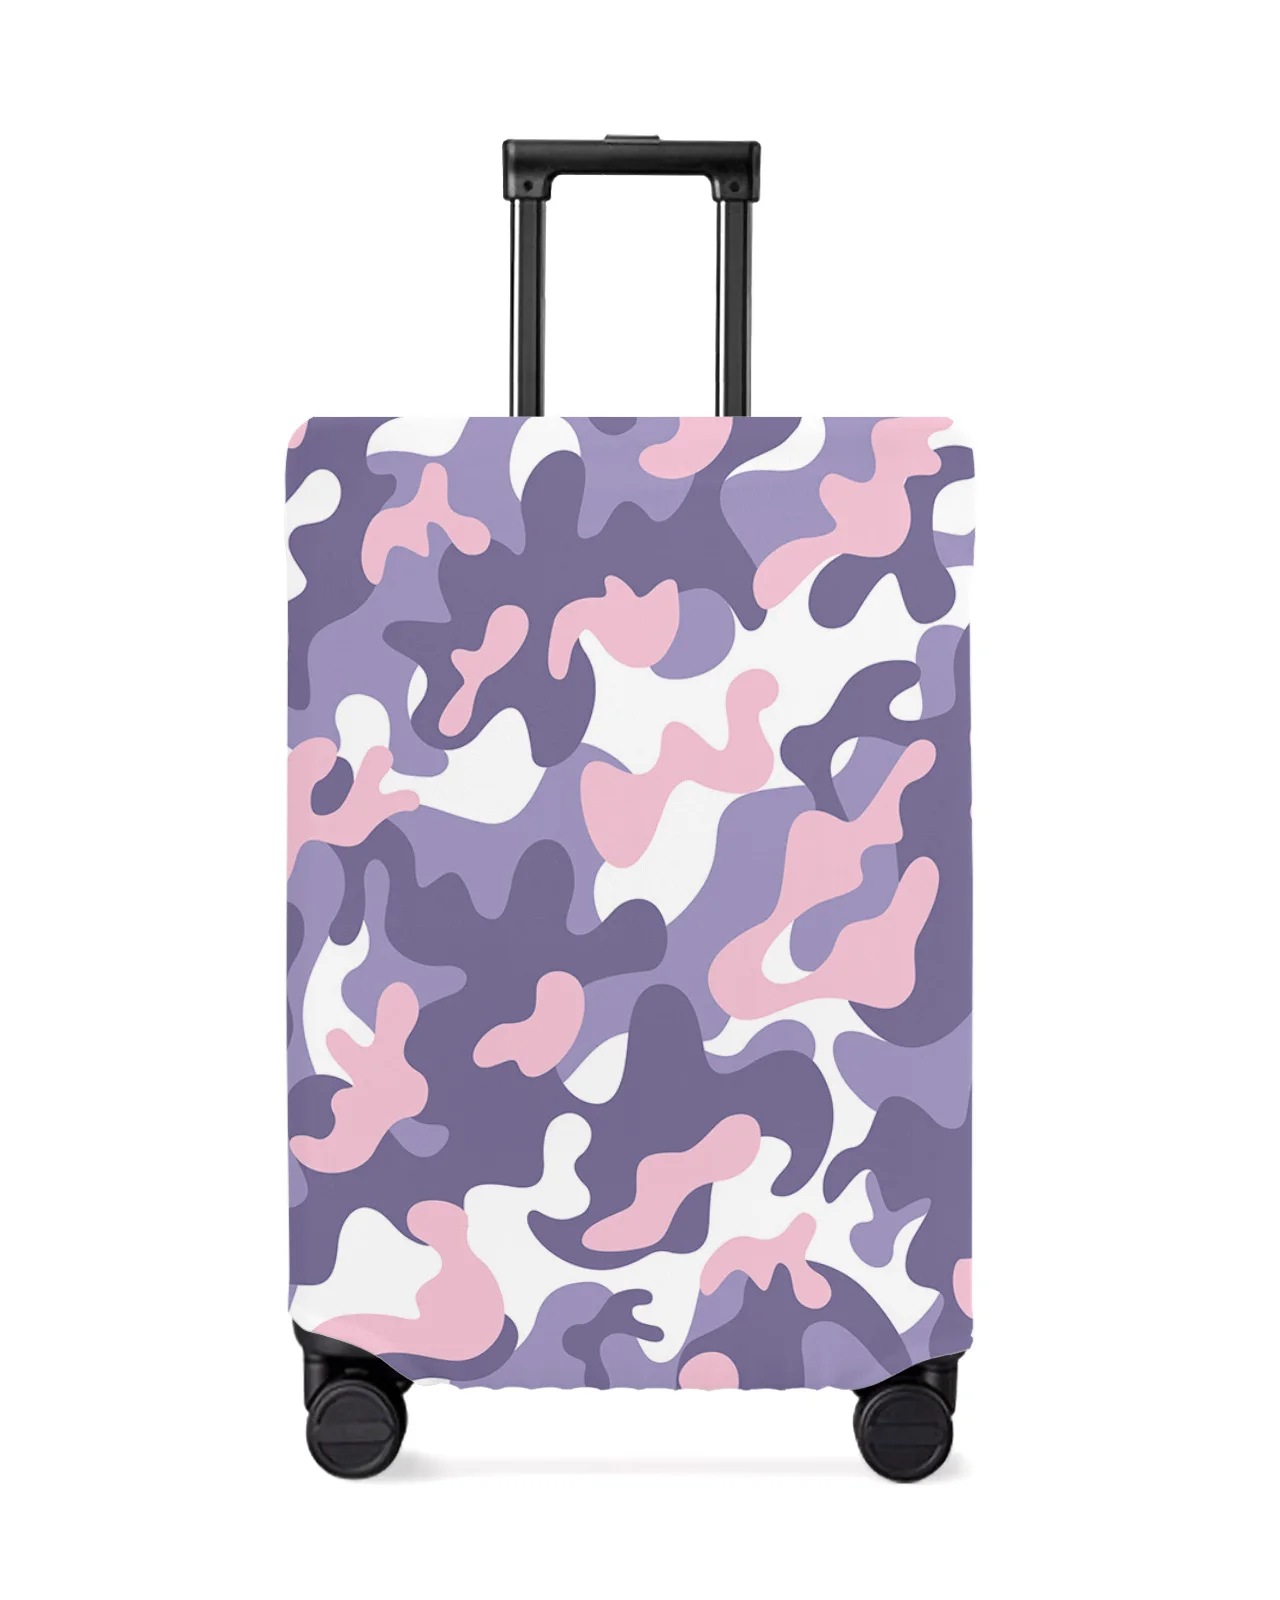 camsolomon-juste-de-bagage-de-voyage-abstraite-violette-housse-de-bagage-elastique-etui-de-valise-housse-anti-poussiere-accessoires-de-voyage-18-32